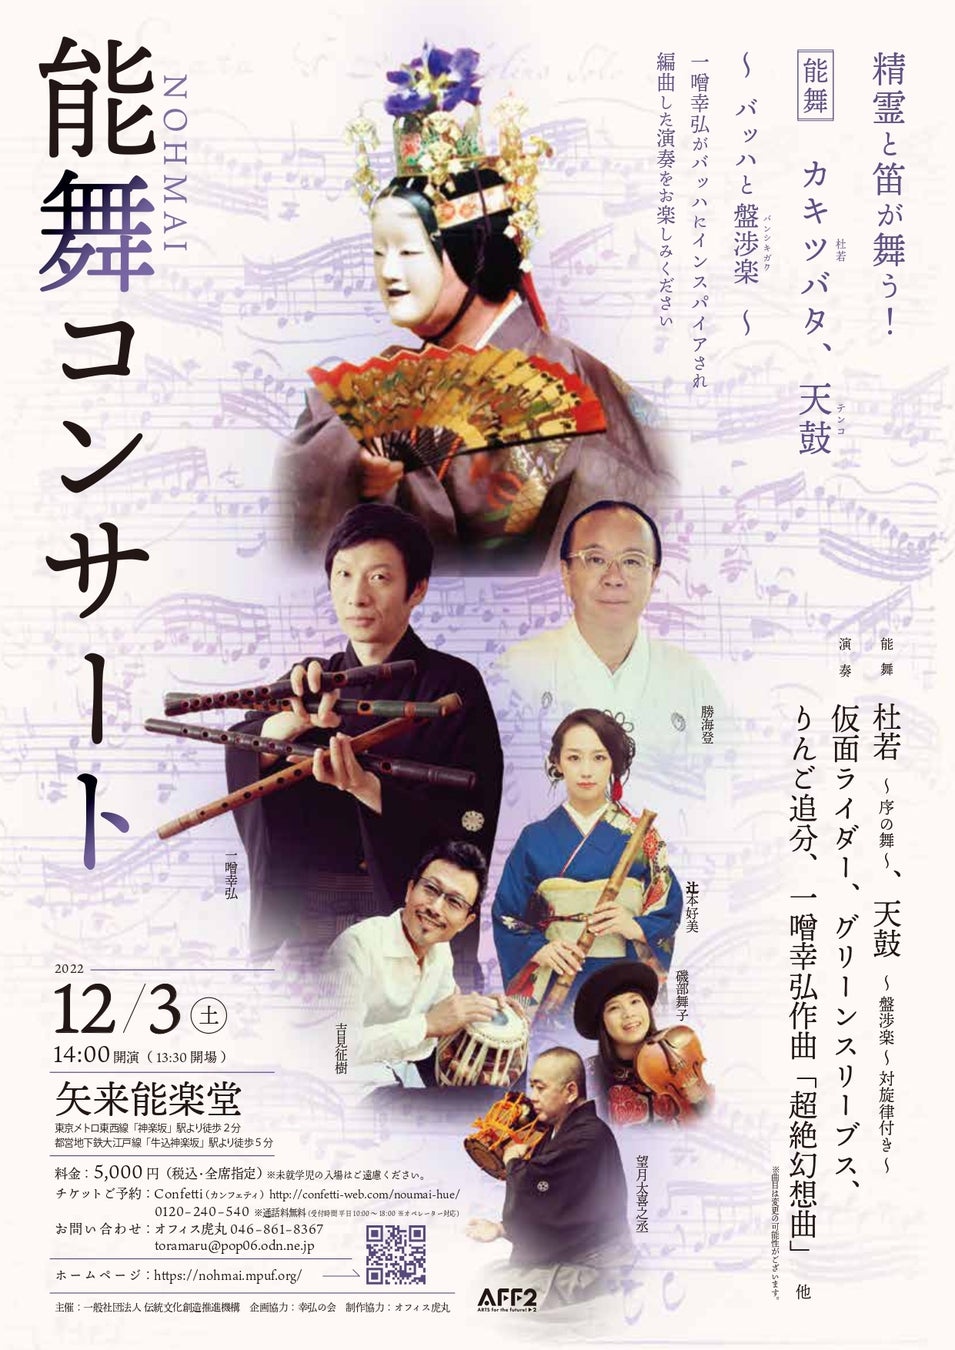 能楽の名手・勝海 登、一噌 幸弘ほか　幅広いアーティストが集結『能舞コンサート』開催決定　カンフェティでチケット発売のサブ画像1